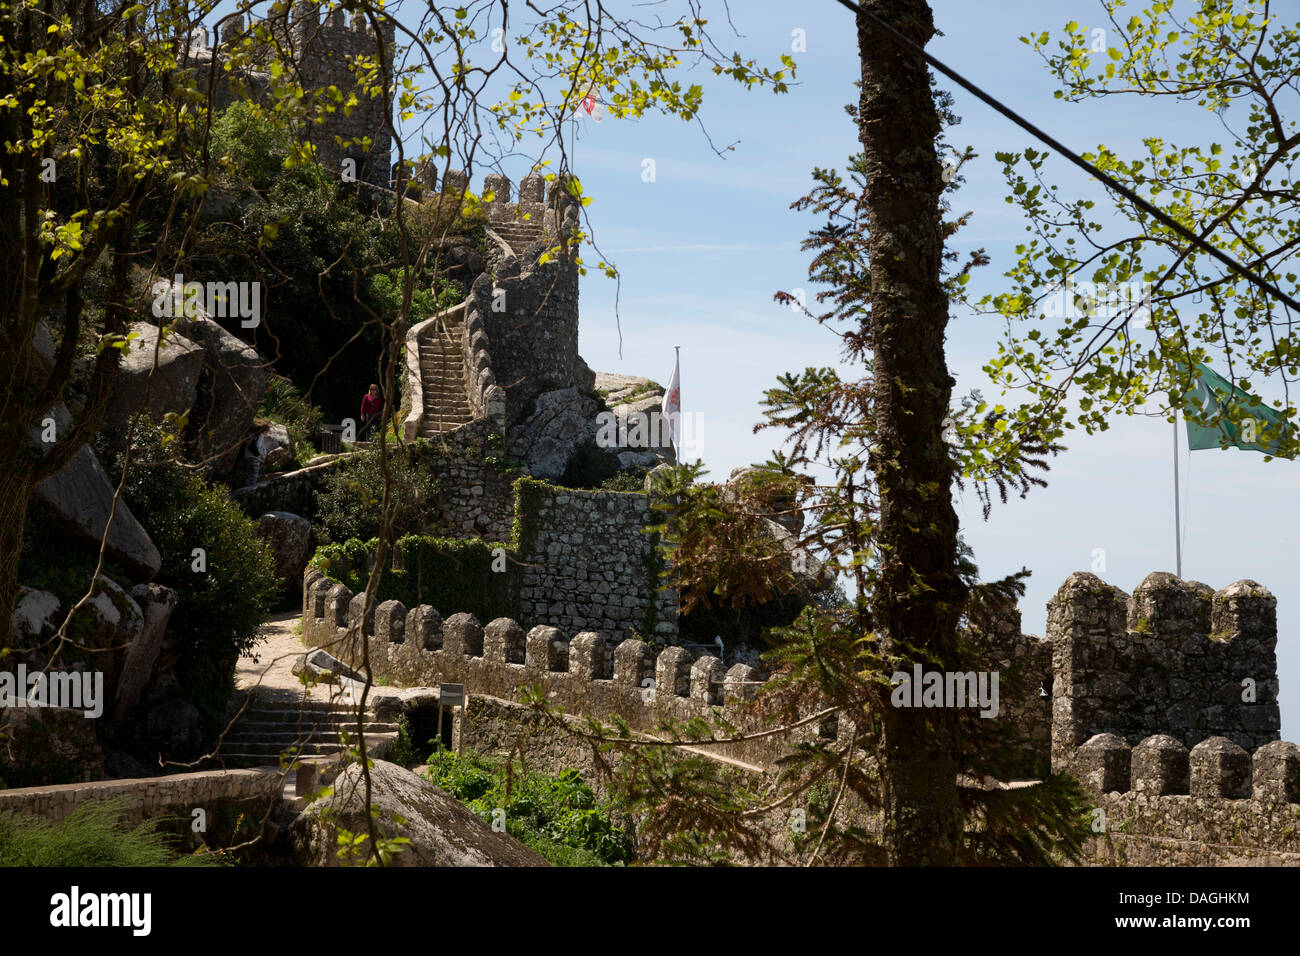 Pareti del Castelo dos Mouros (castello moresco), catturato dai cristiani nel 1147, Sintra, Portogallo. Foto Stock